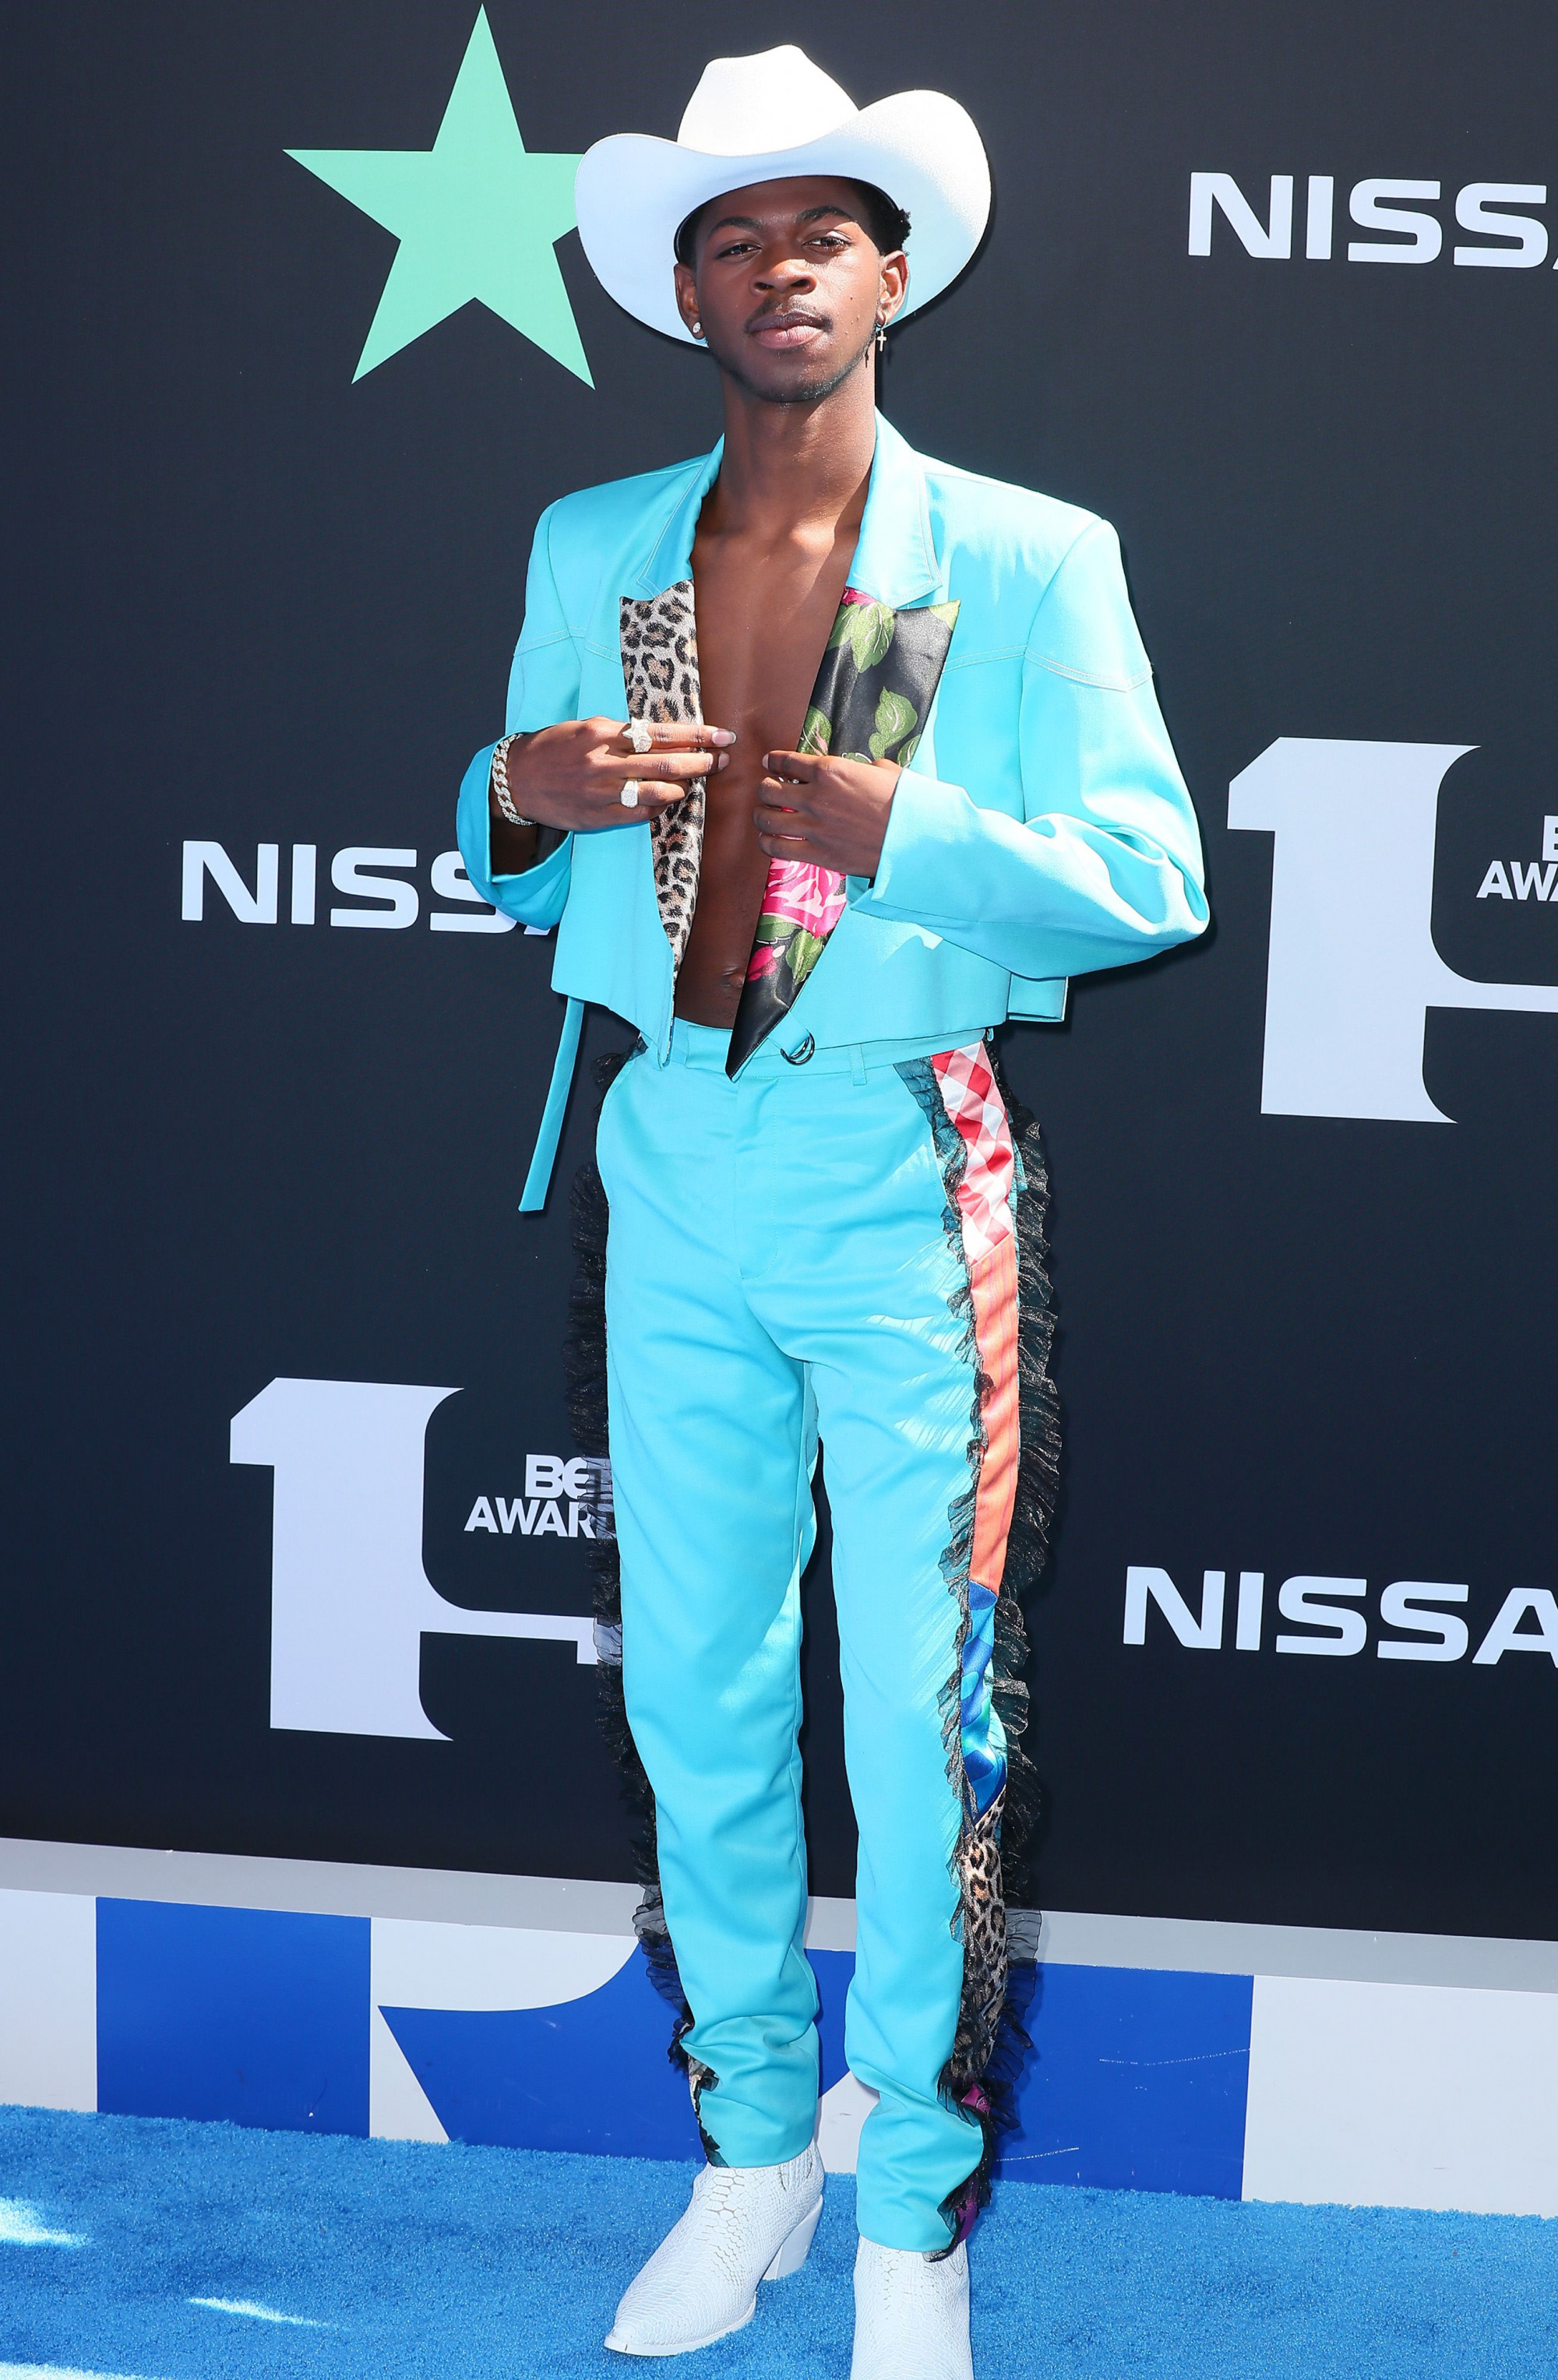 Nhờ thân hình thon gọn, săn chắc, Lil Nas X thường diện áo hở eo, khoe ngực. Anh thường xuất hiện với trang phục có màu sắc rất nổi bật.